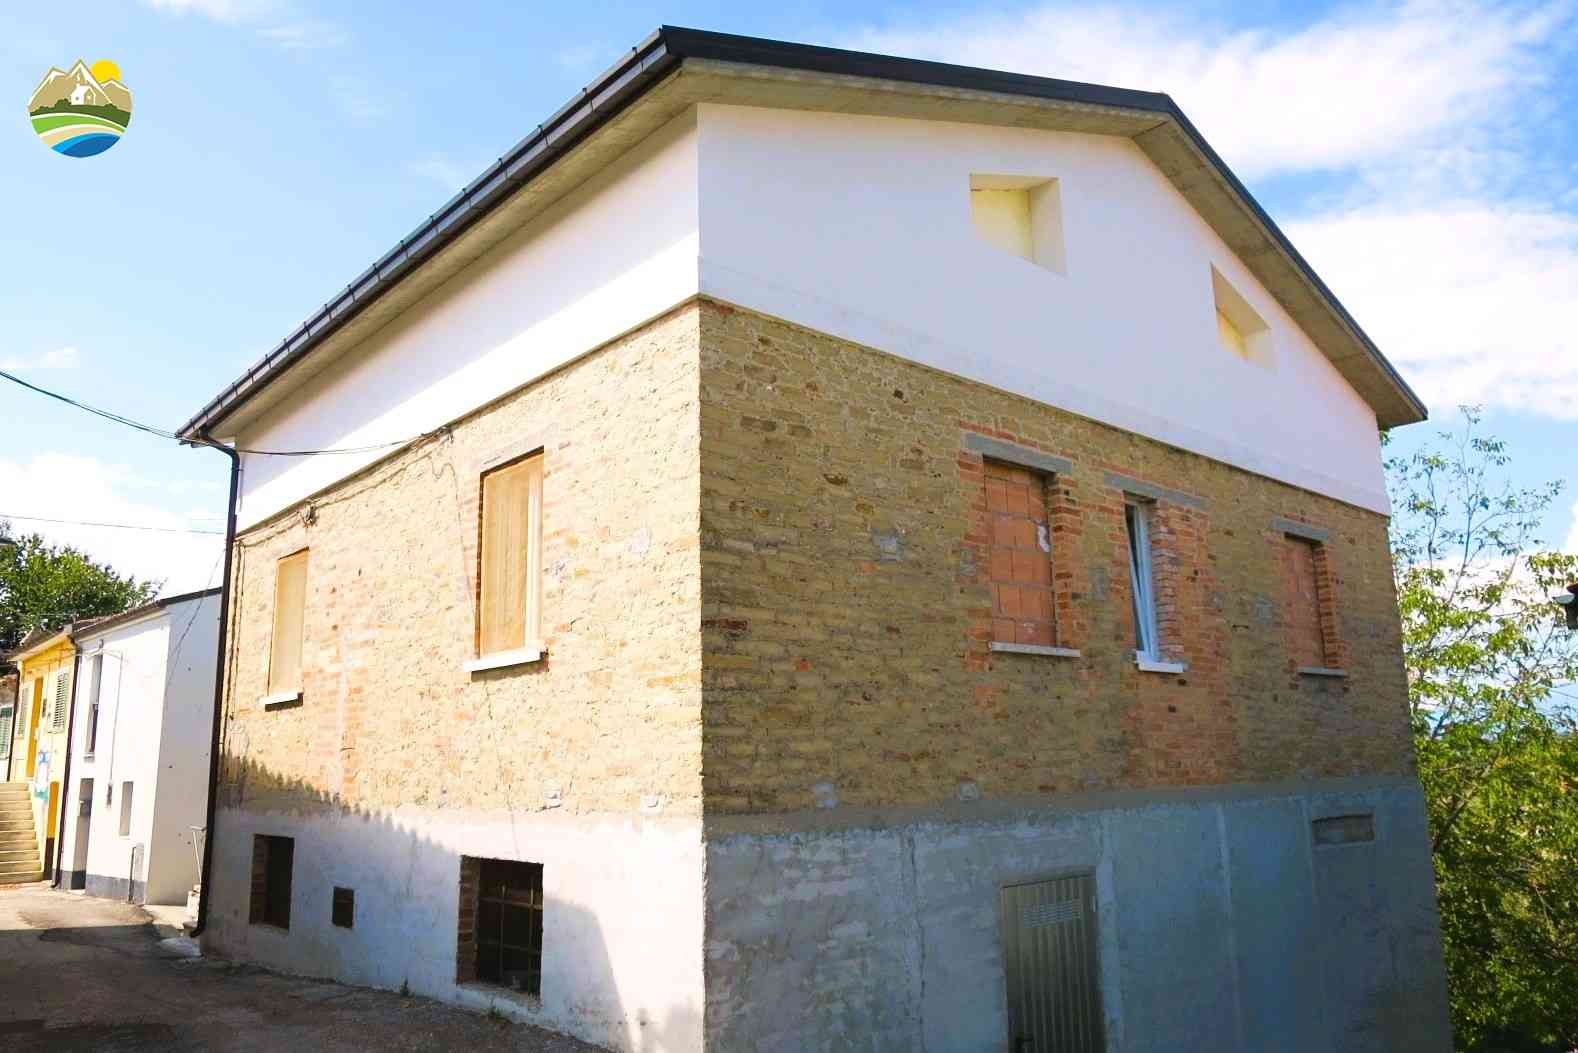 Casa in paese Casa in paese in vendita Cellino Attanasio (TE), Casa del Barone - Cellino Attanasio - EUR 105.105 570